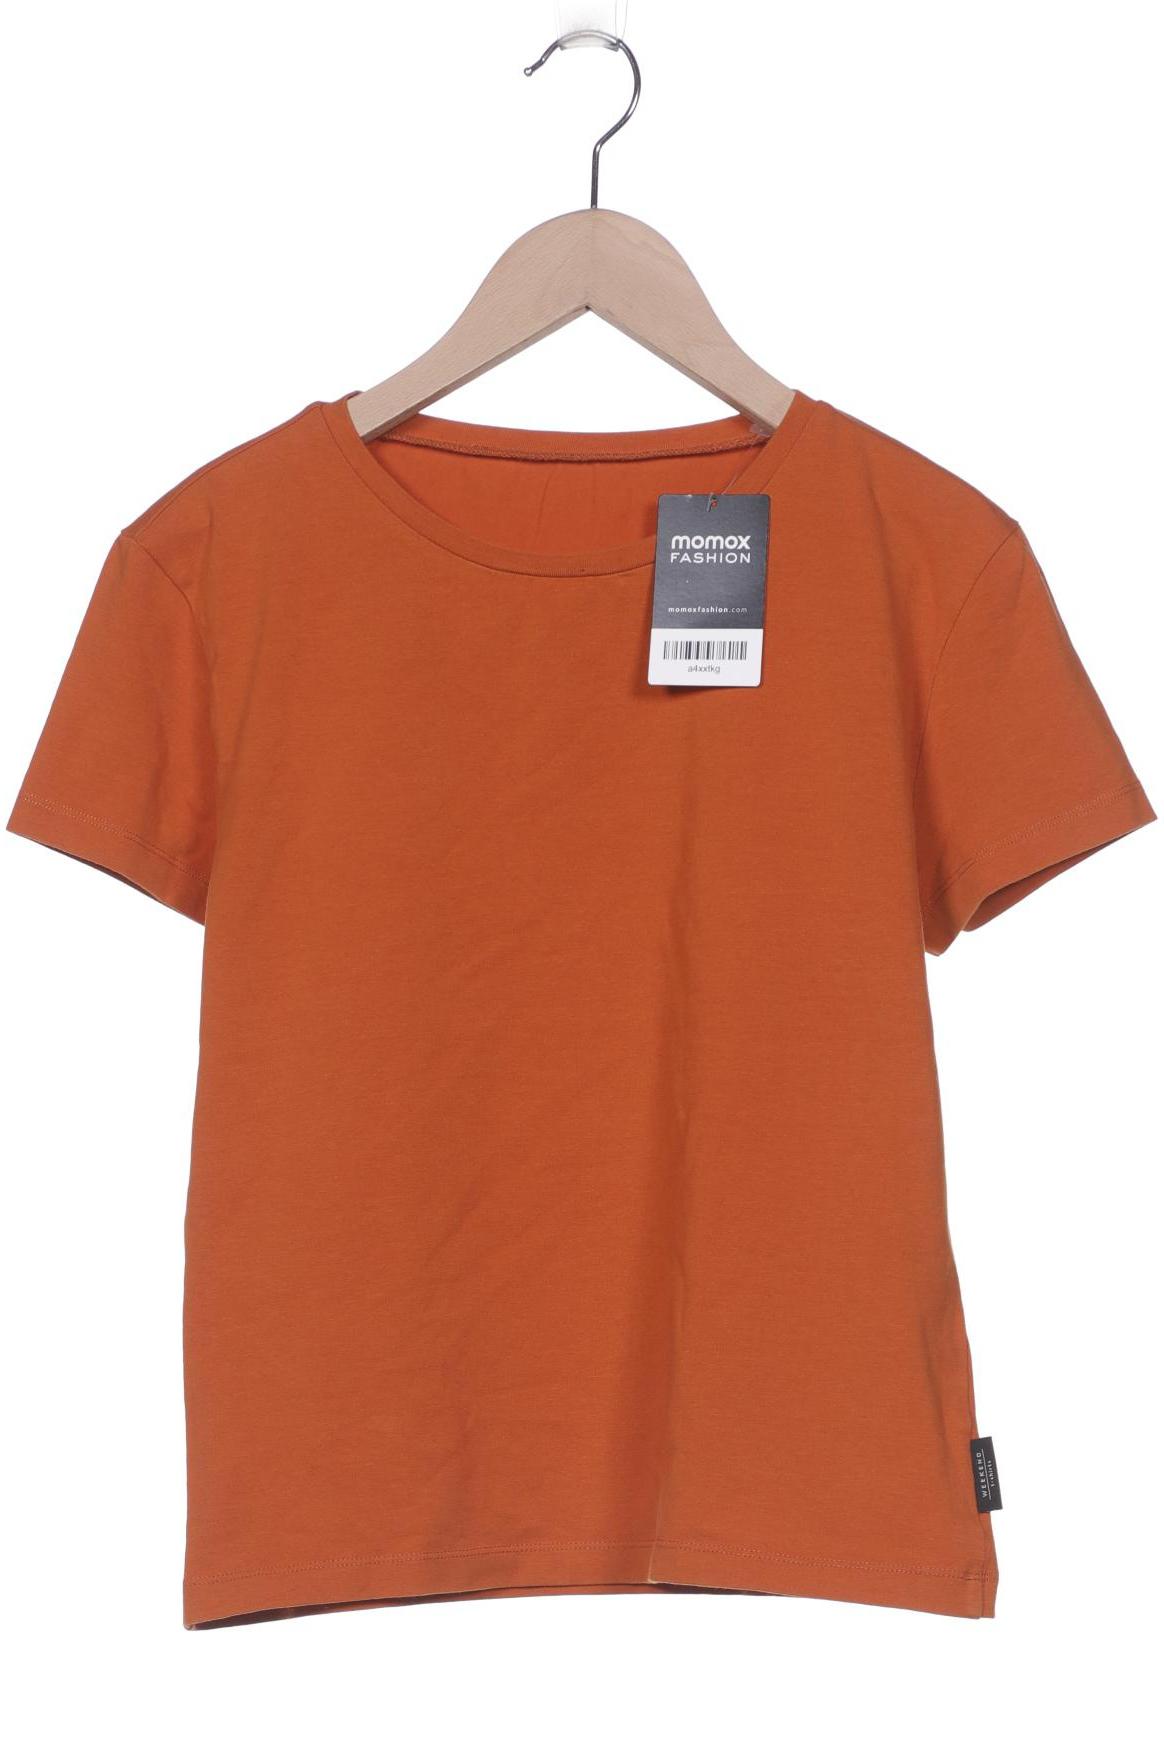 WEEKEND Max Mara Damen T-Shirt, orange von WEEKEND Max Mara